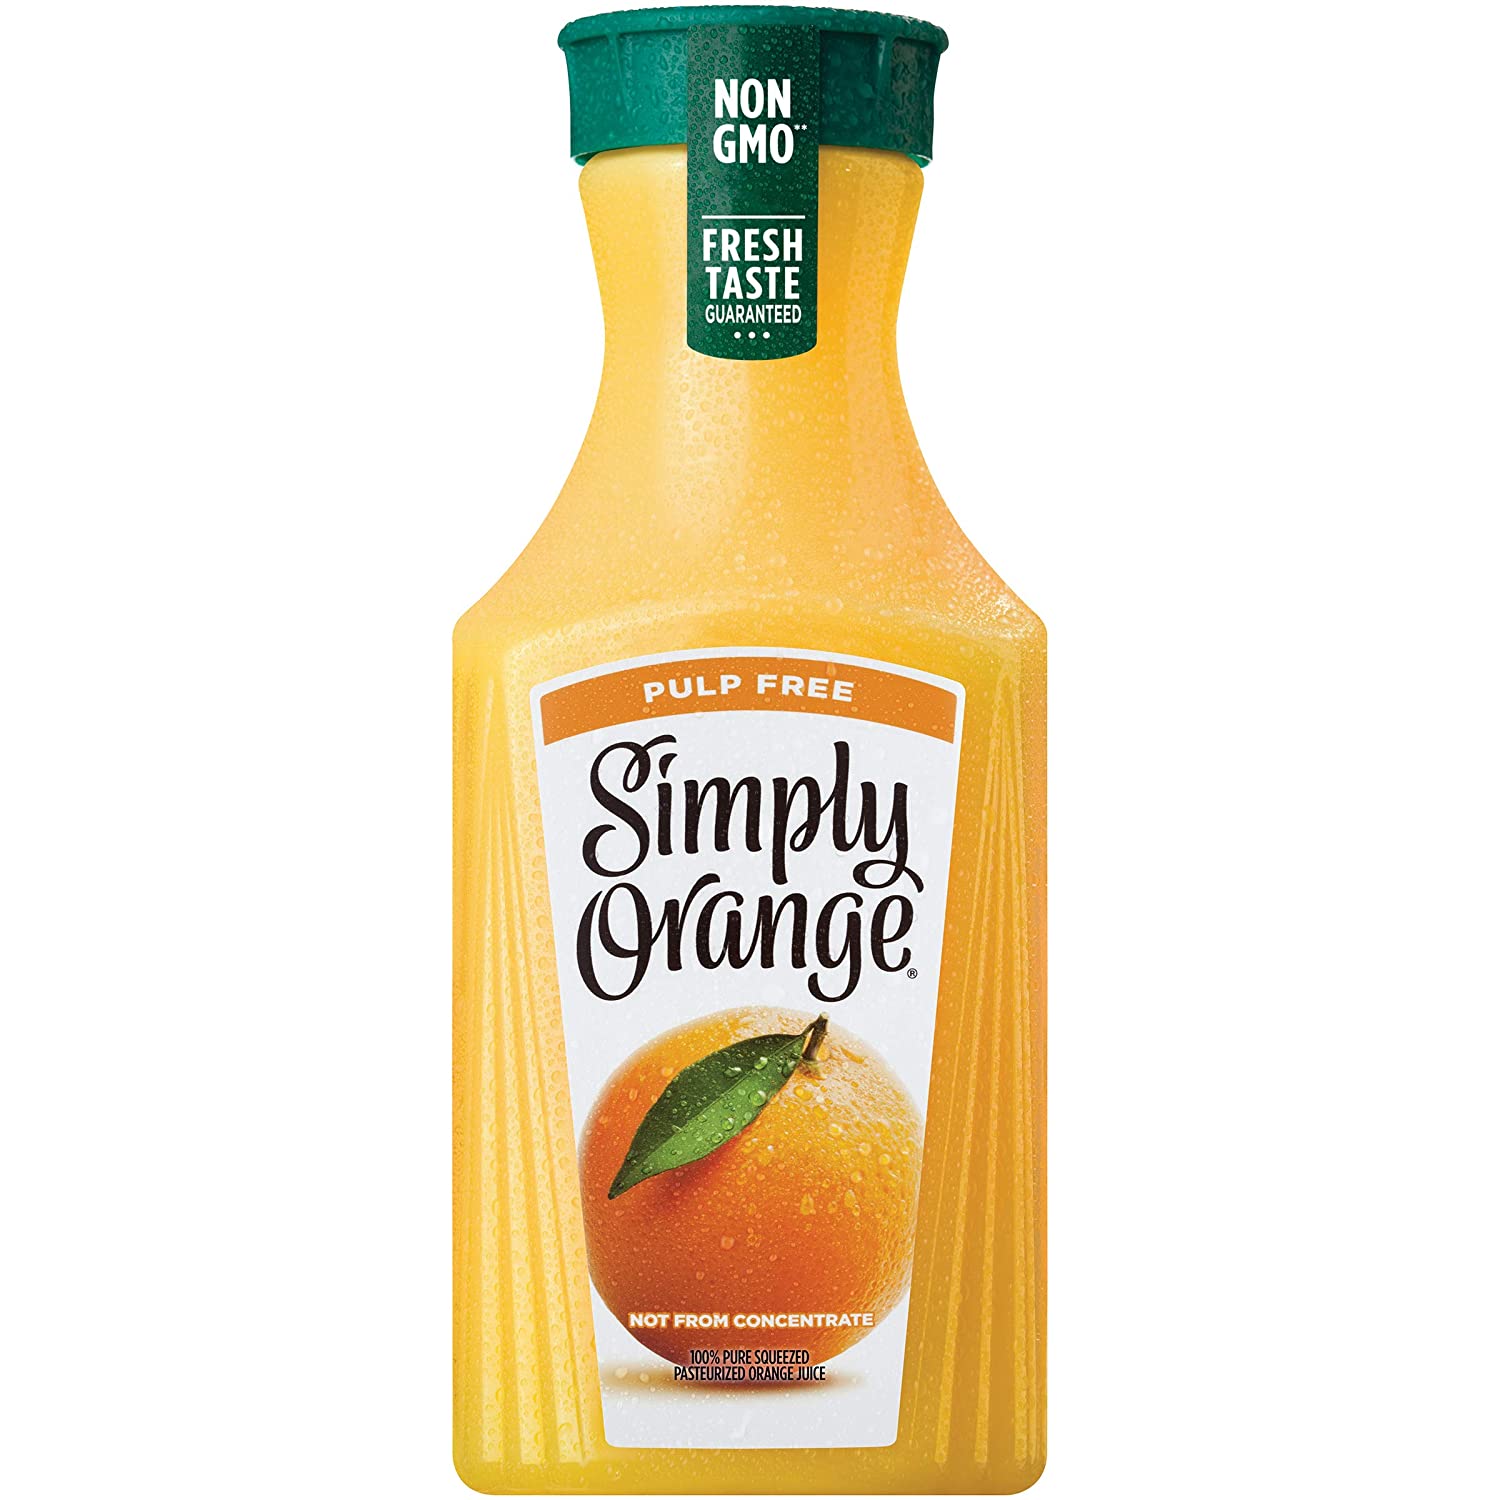 Simply Orange Juice, 52 fl oz, 100% Juice, Pulp Free